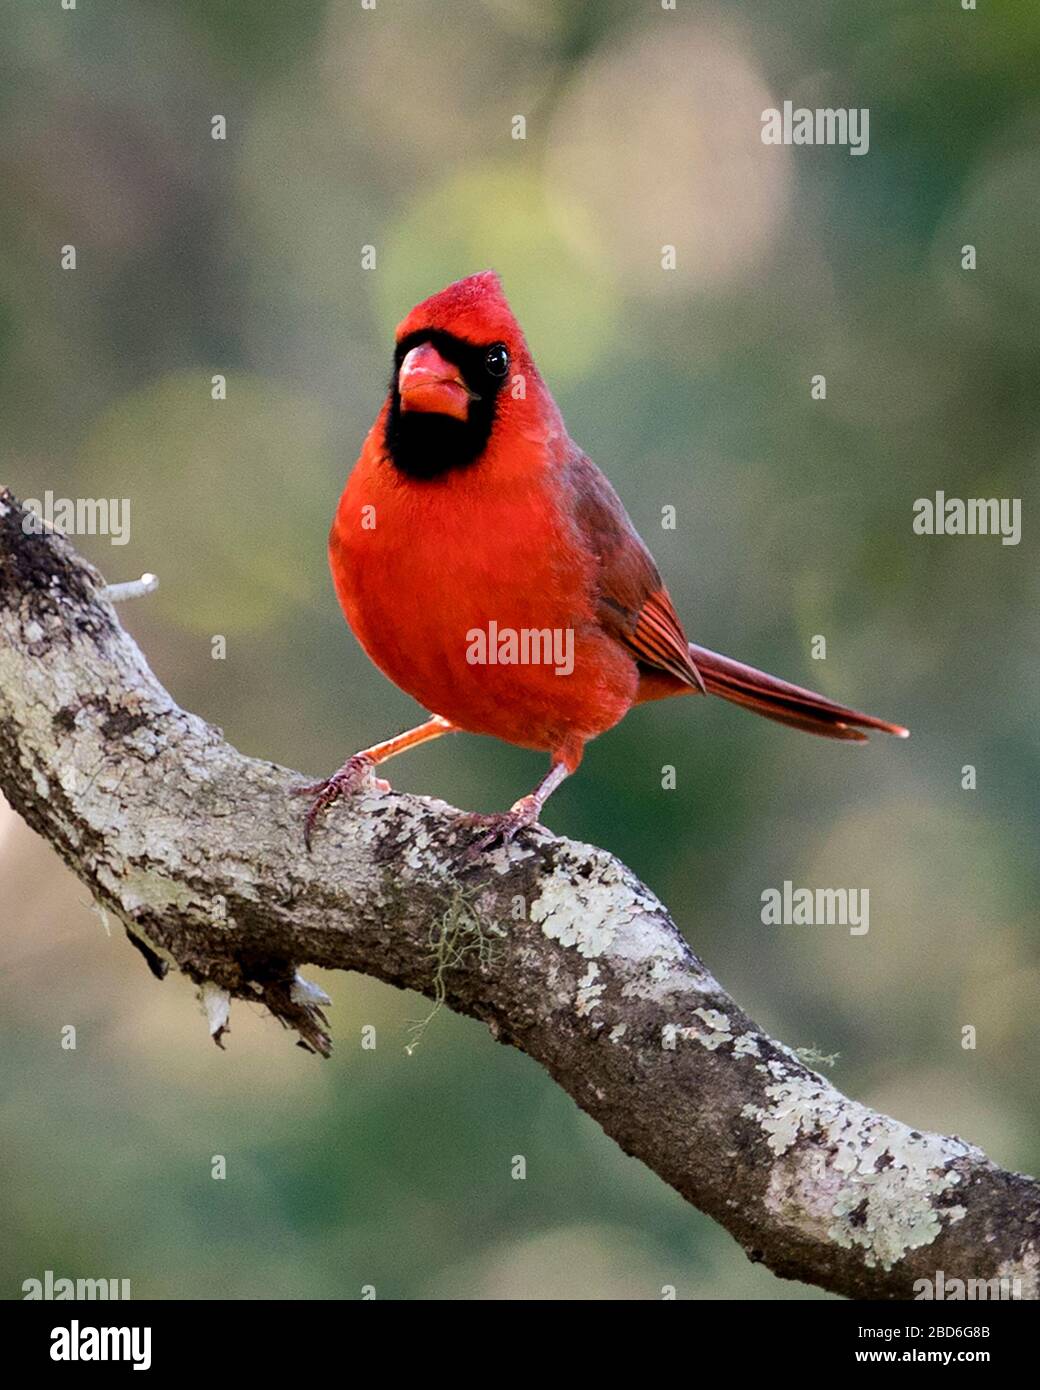 Cardinale uccello maschio arroccato su un ramo che mostra il suo bel corpo rosso, testa, becco, occhio, godendo il suo ambiente e dintorni con un bel bokeh Foto Stock